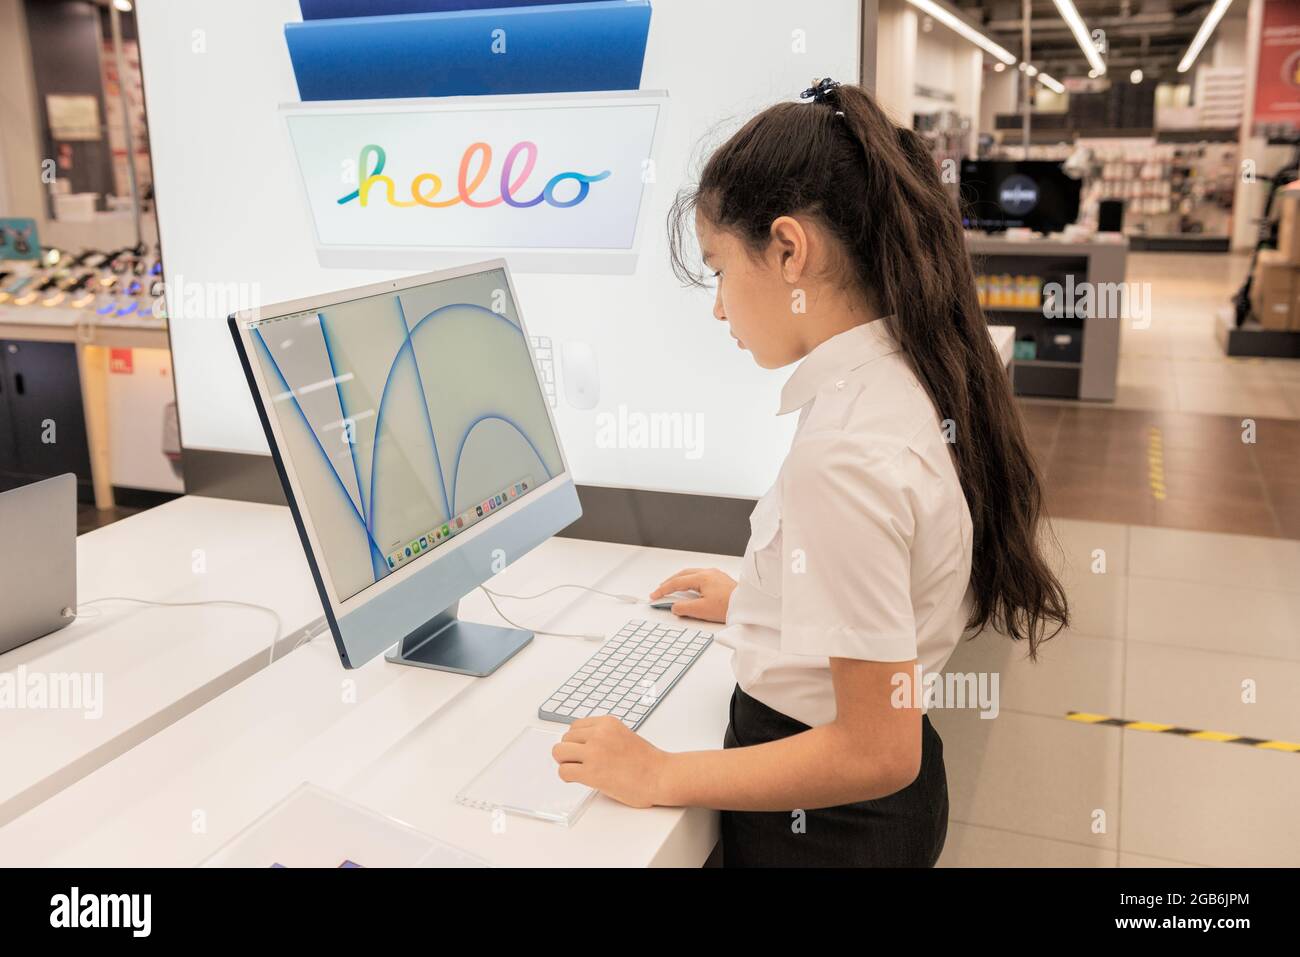 Ein Schulmädchen wählt, überprüft und testet einen Computer in einem Geschäft Stockfoto